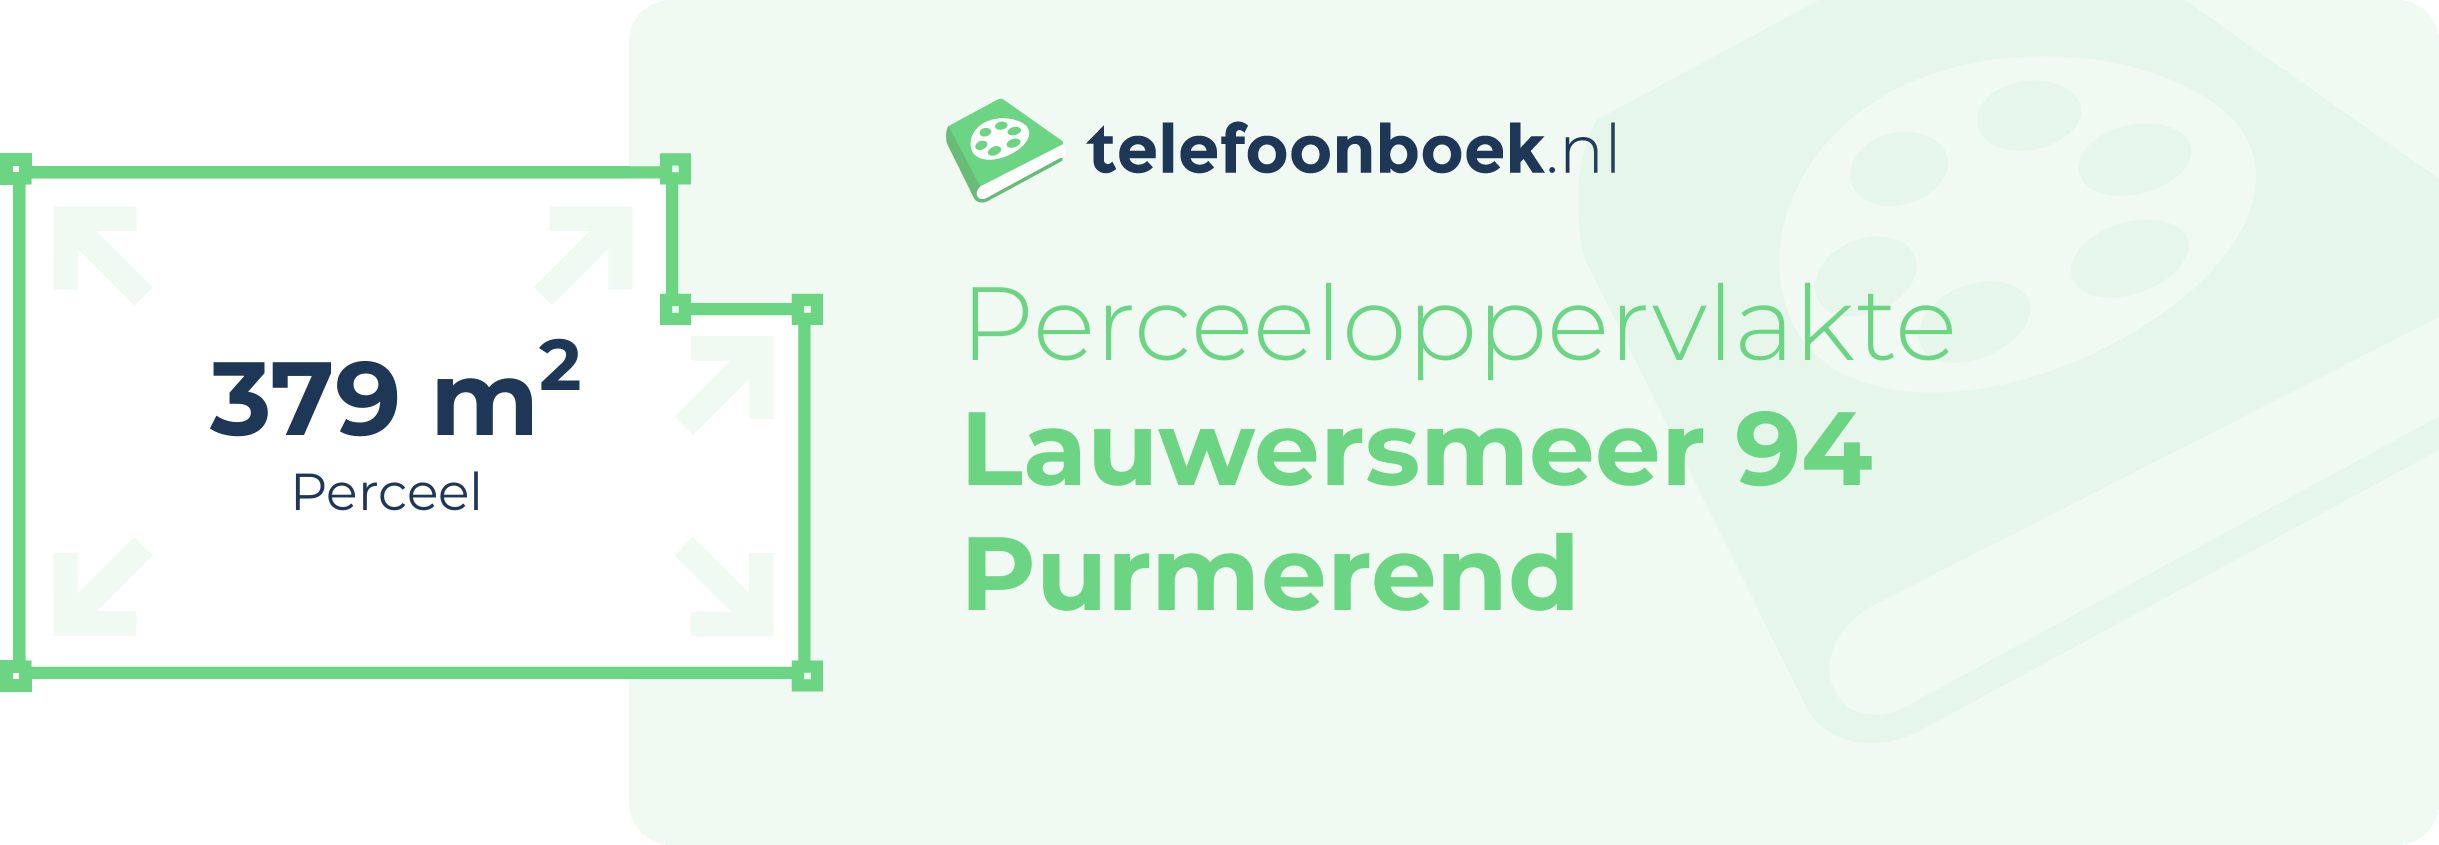 Perceeloppervlakte Lauwersmeer 94 Purmerend